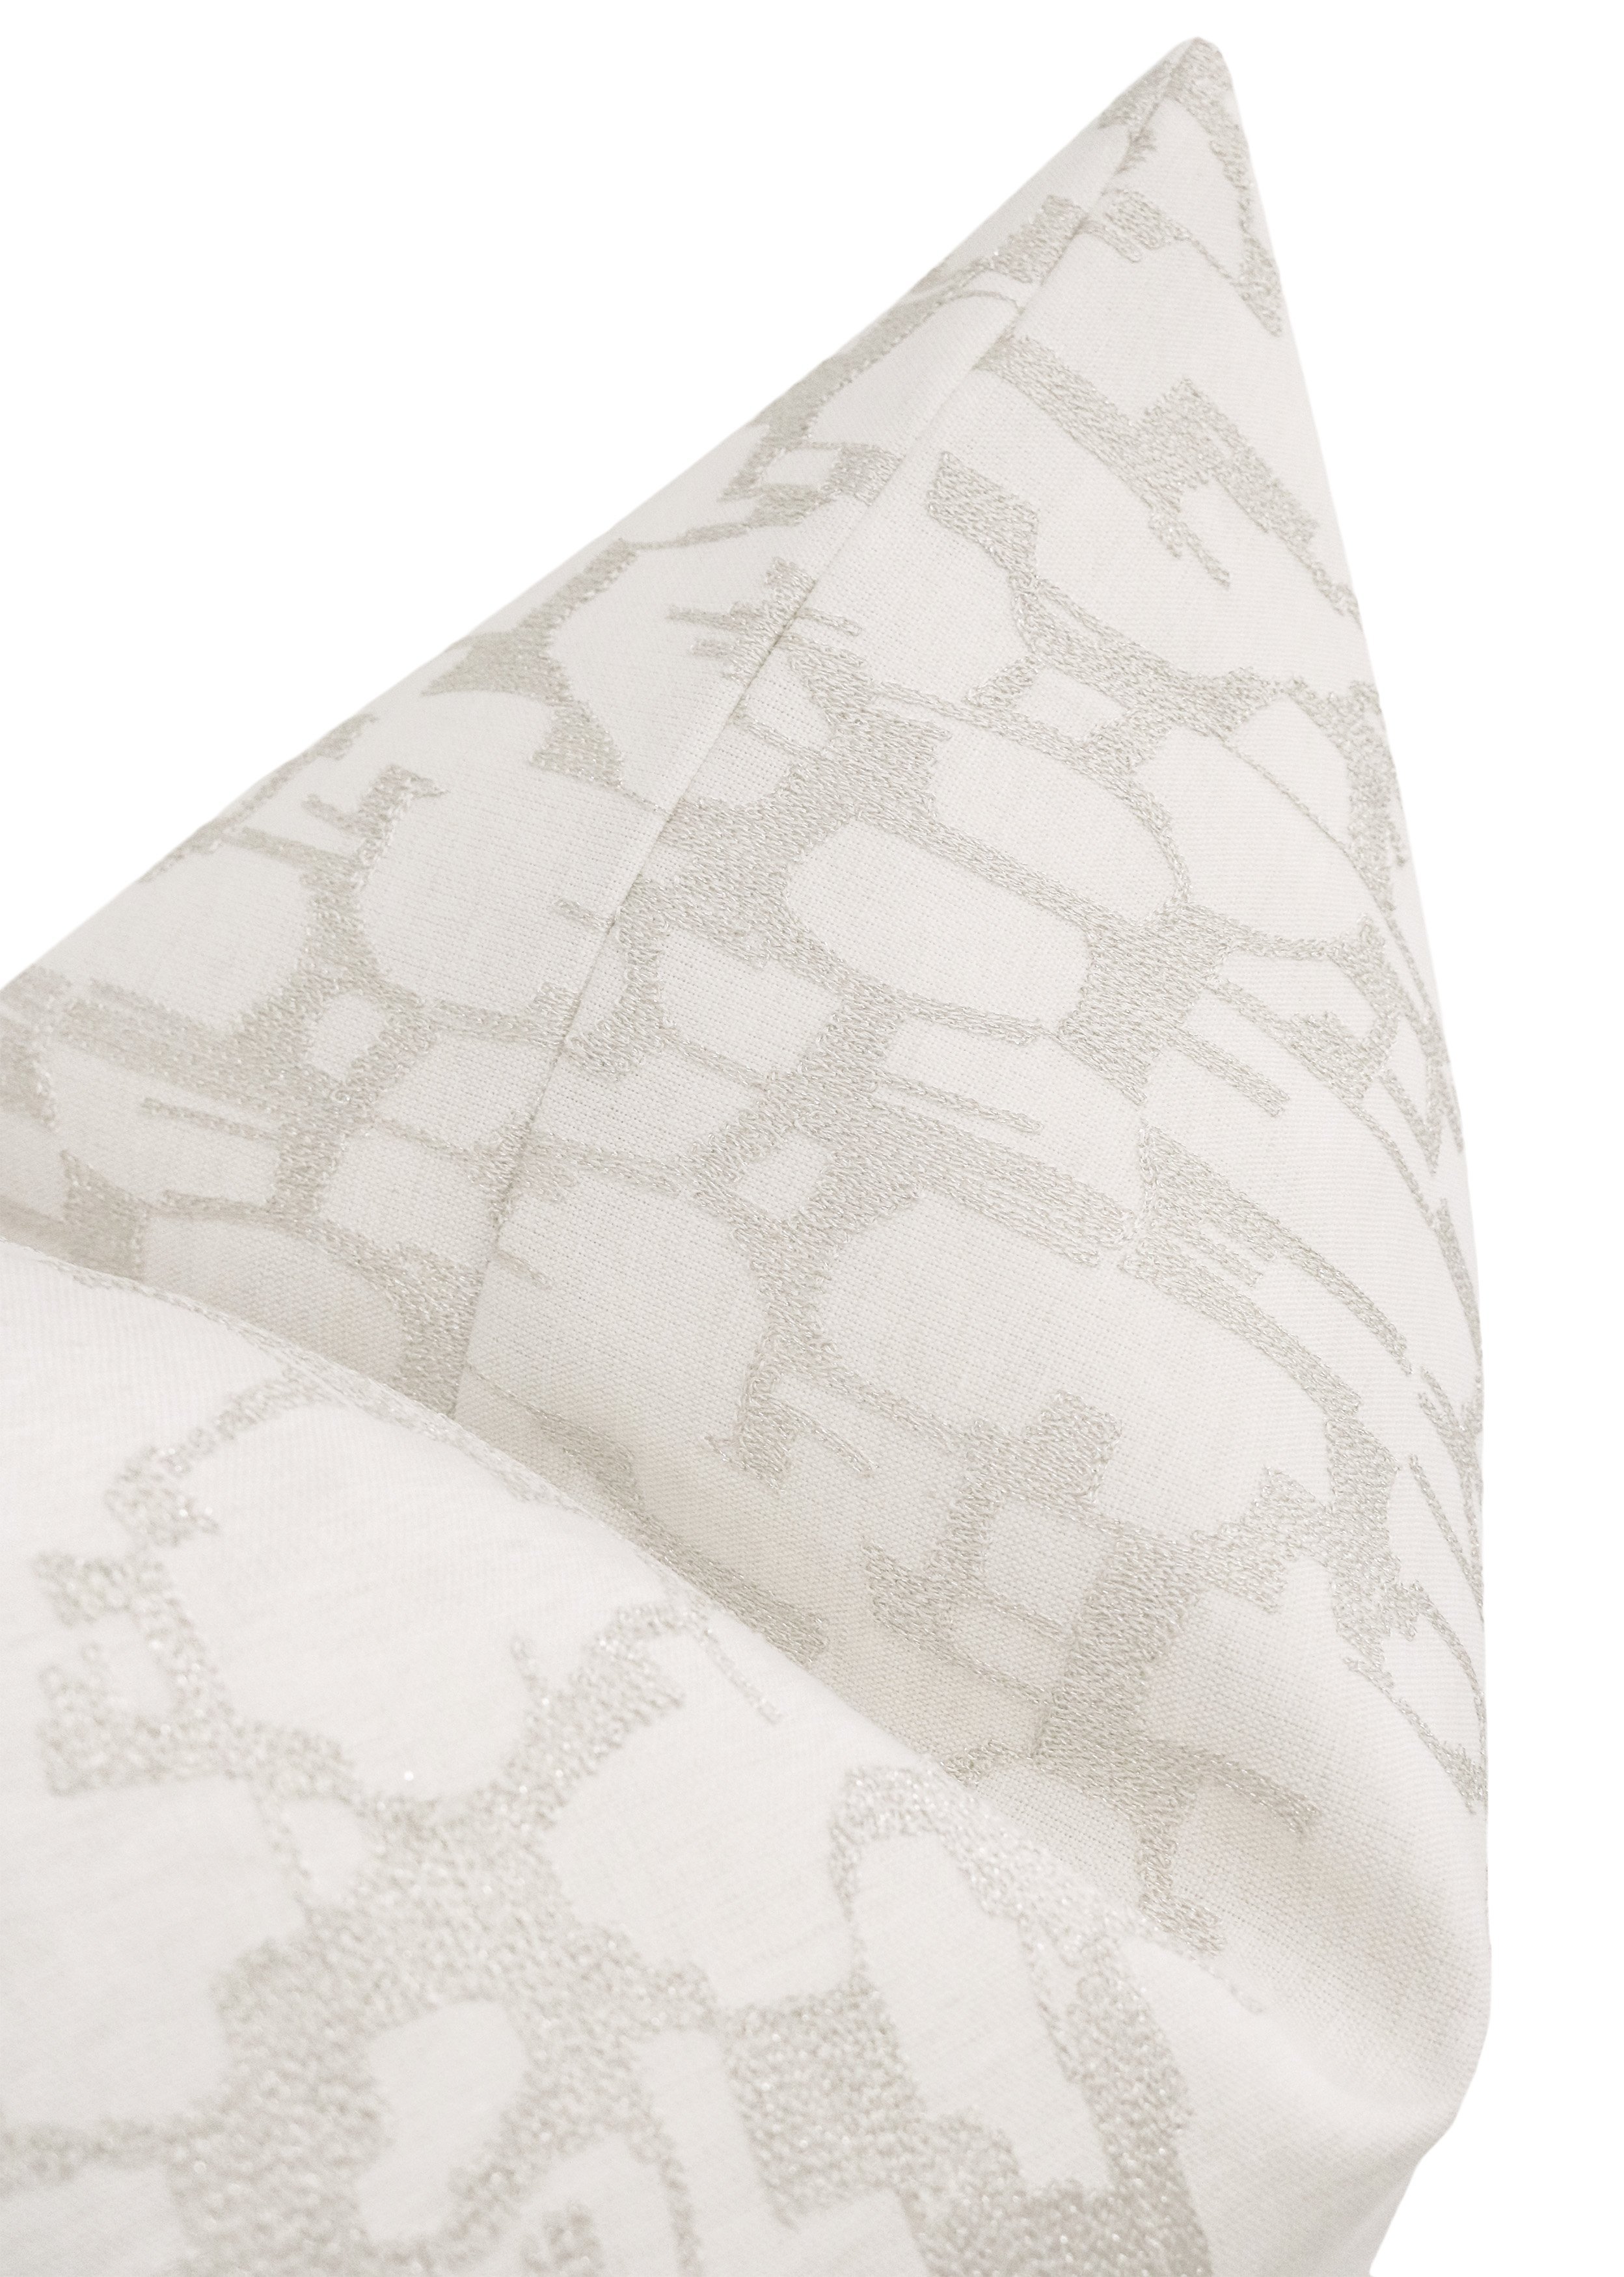 Pastiche Linen Pillow, Cashmere, 20"x 20" - Image 2